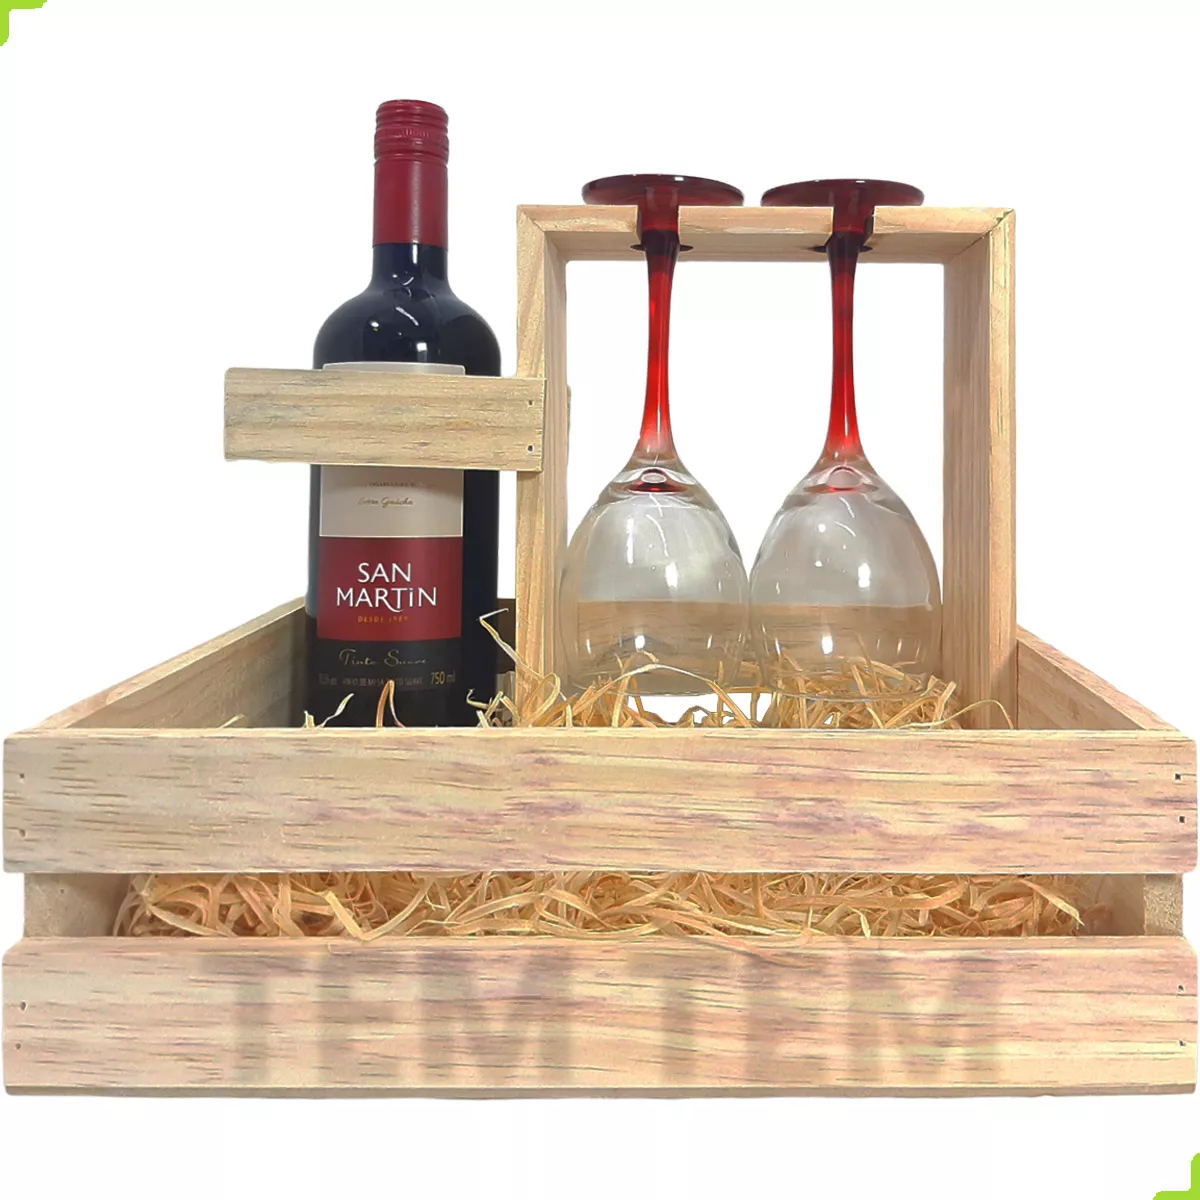 Terceira imagem para pesquisa de caixote de madeira de vinhos usados